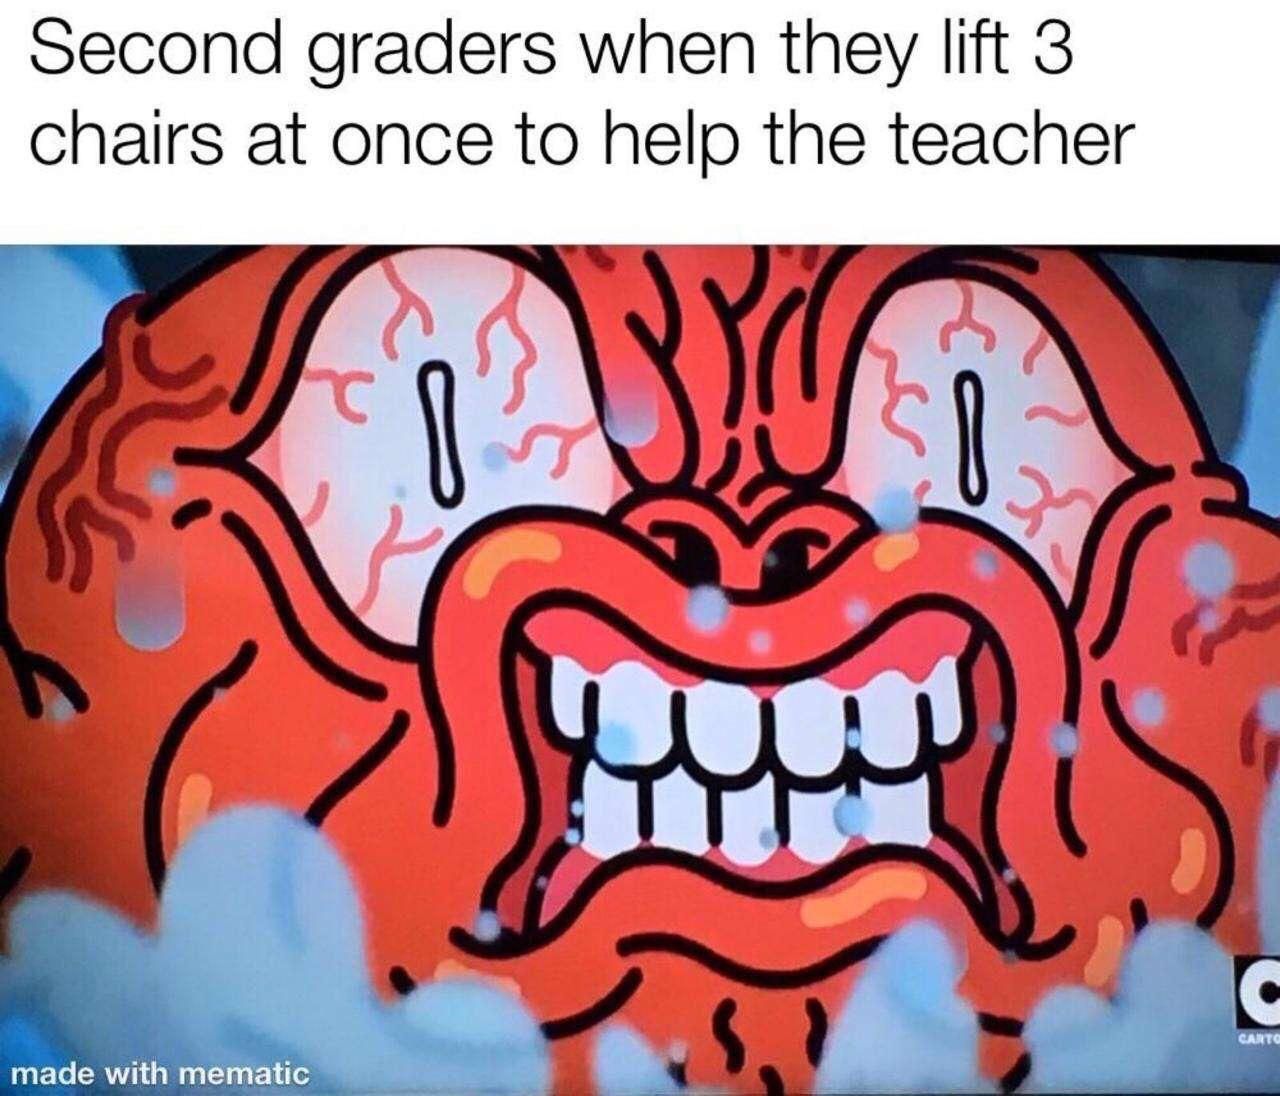 Another school meme